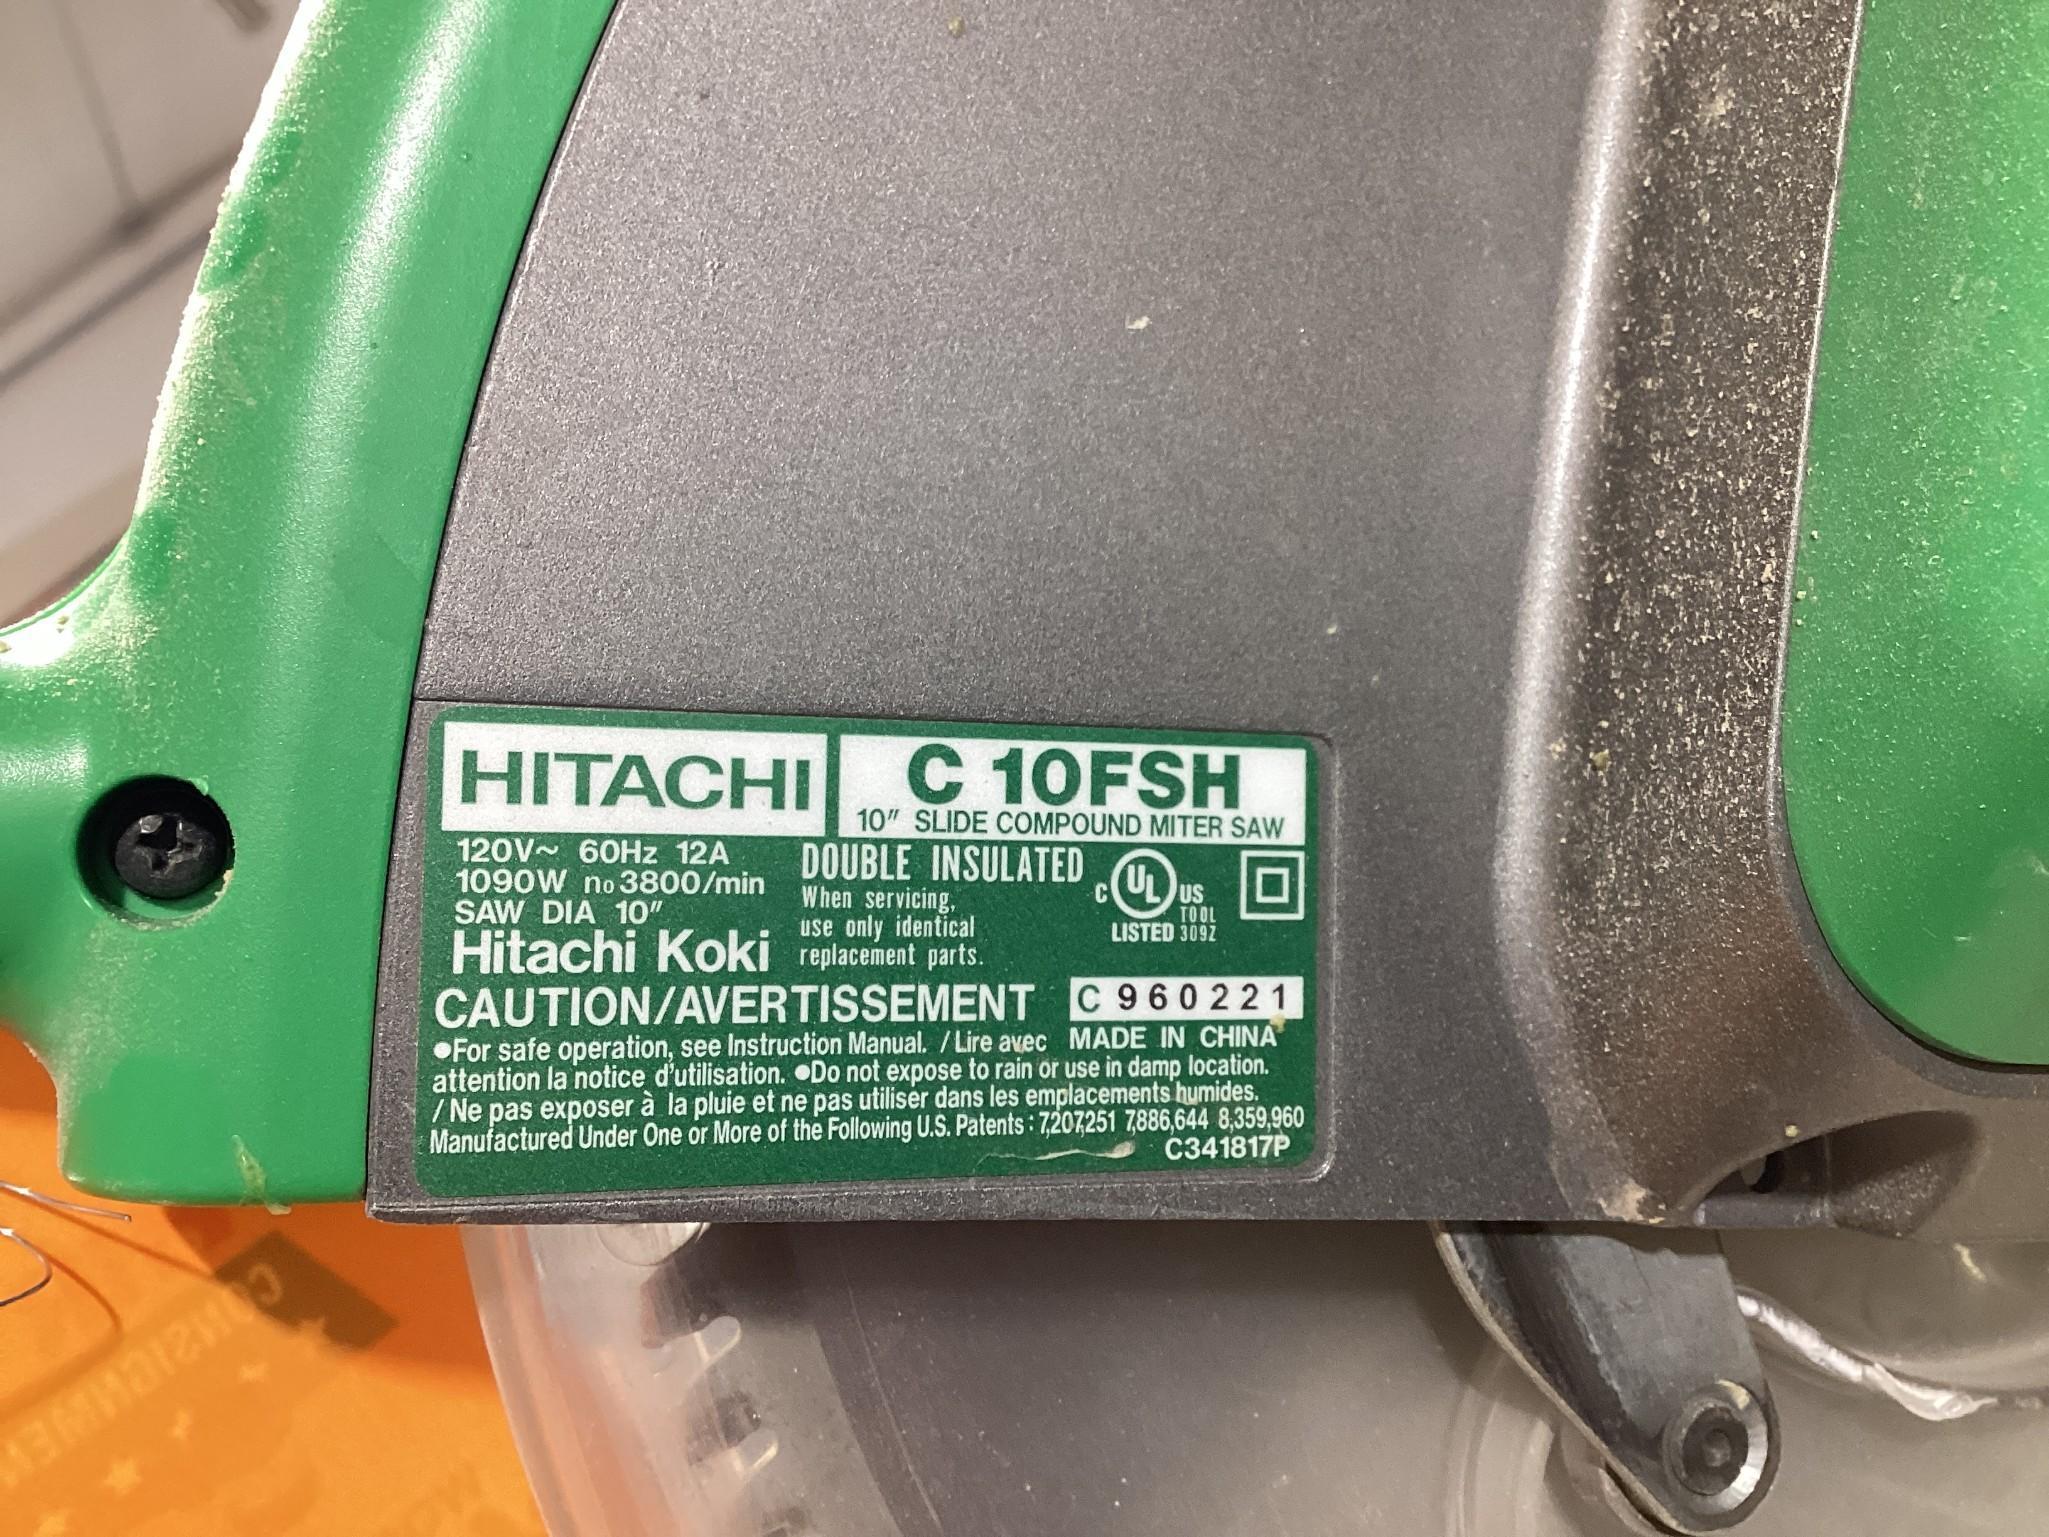 Hitachi C 10FSH 10" Sliding Compound Miter Saw, 120 Volt, In Excellent Working Condition